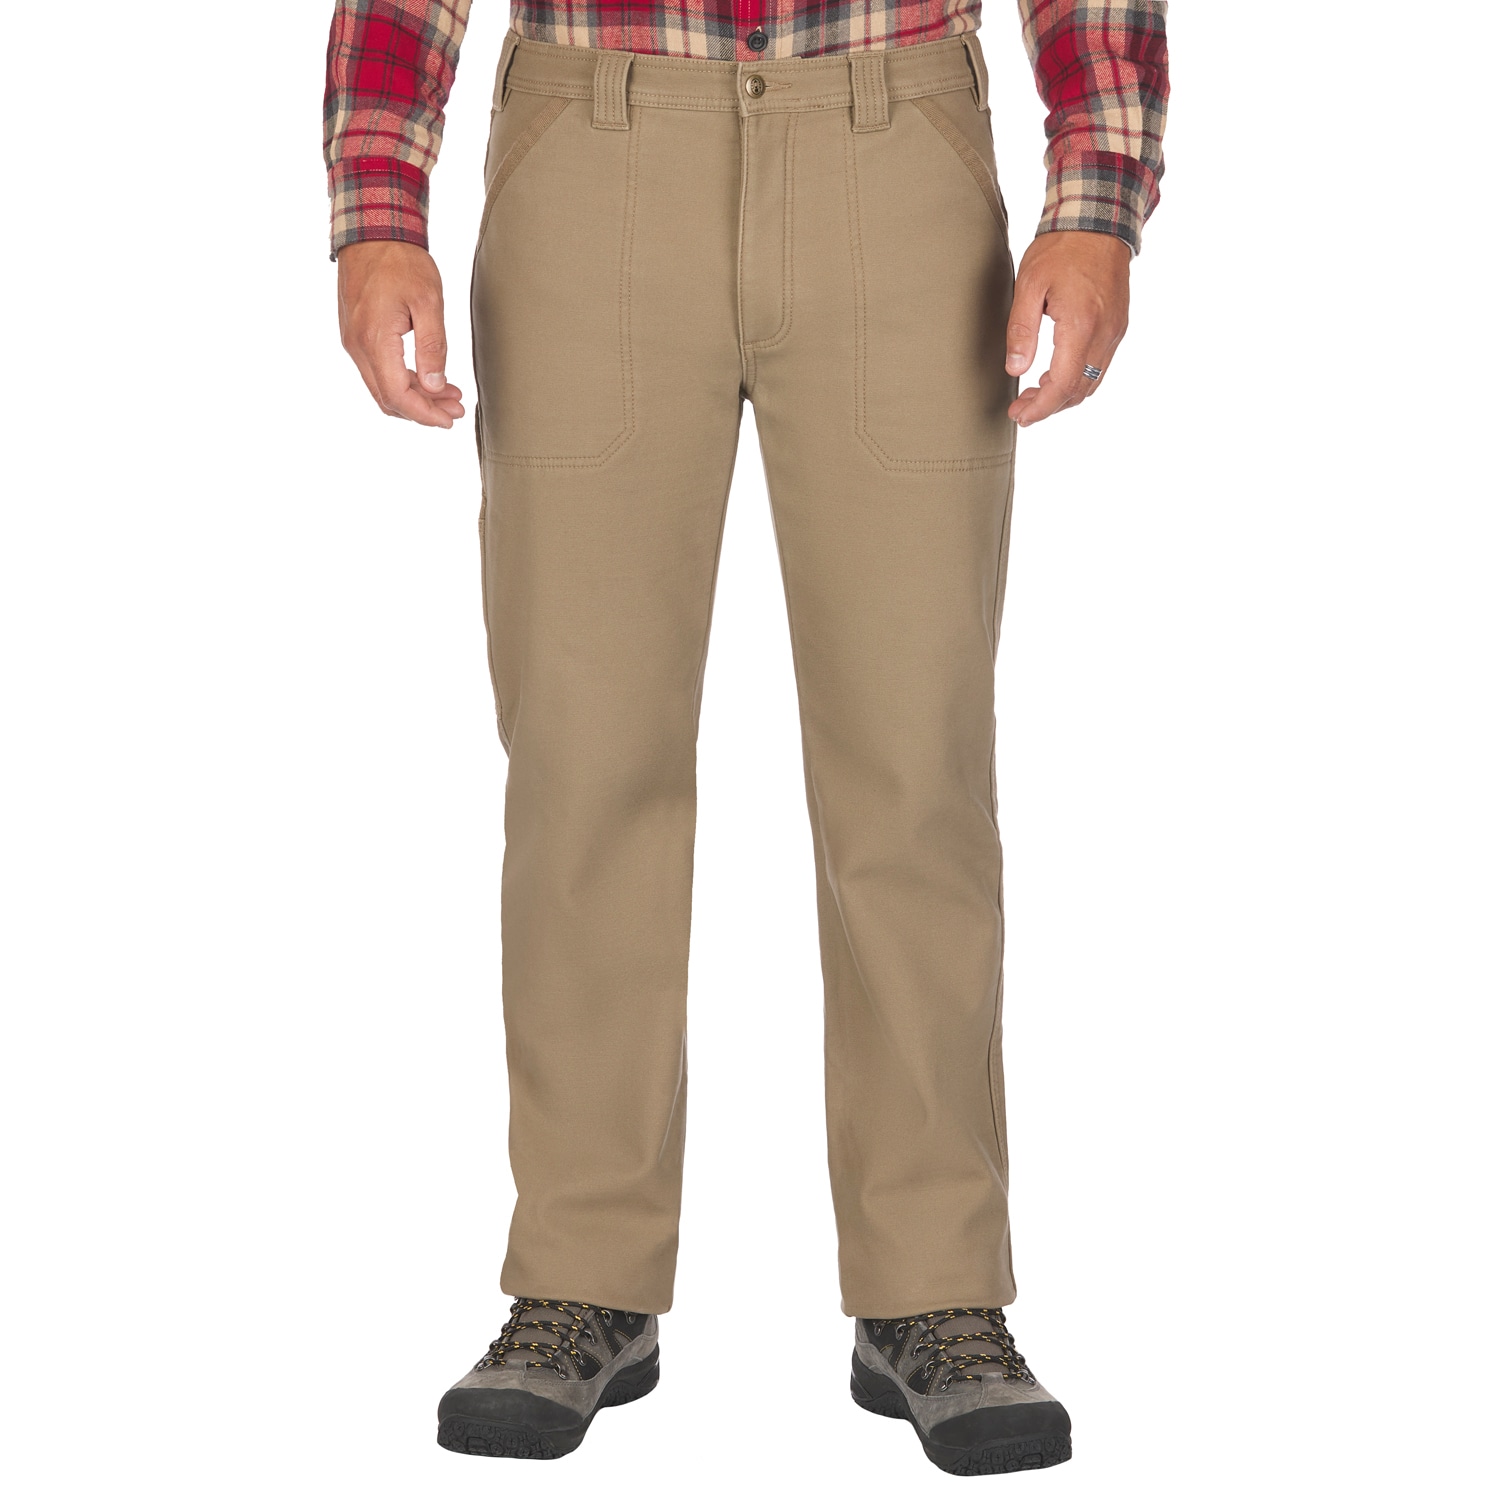  Coleman Fleece Lined Outdoor Pants (40x32, Driftwood